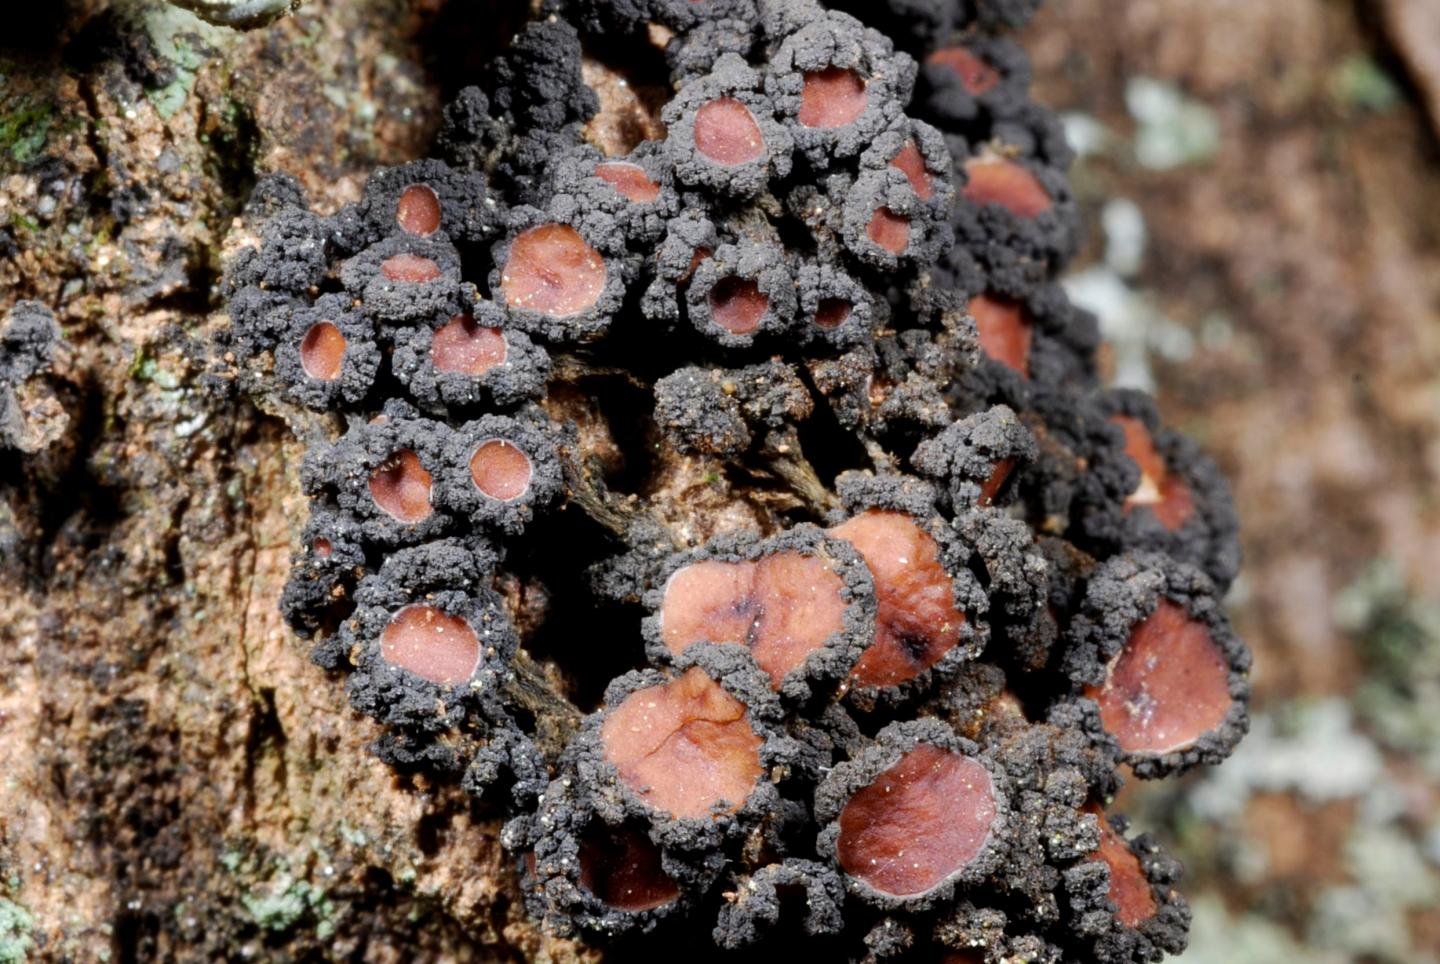 Jelly lichen Leptogium sp